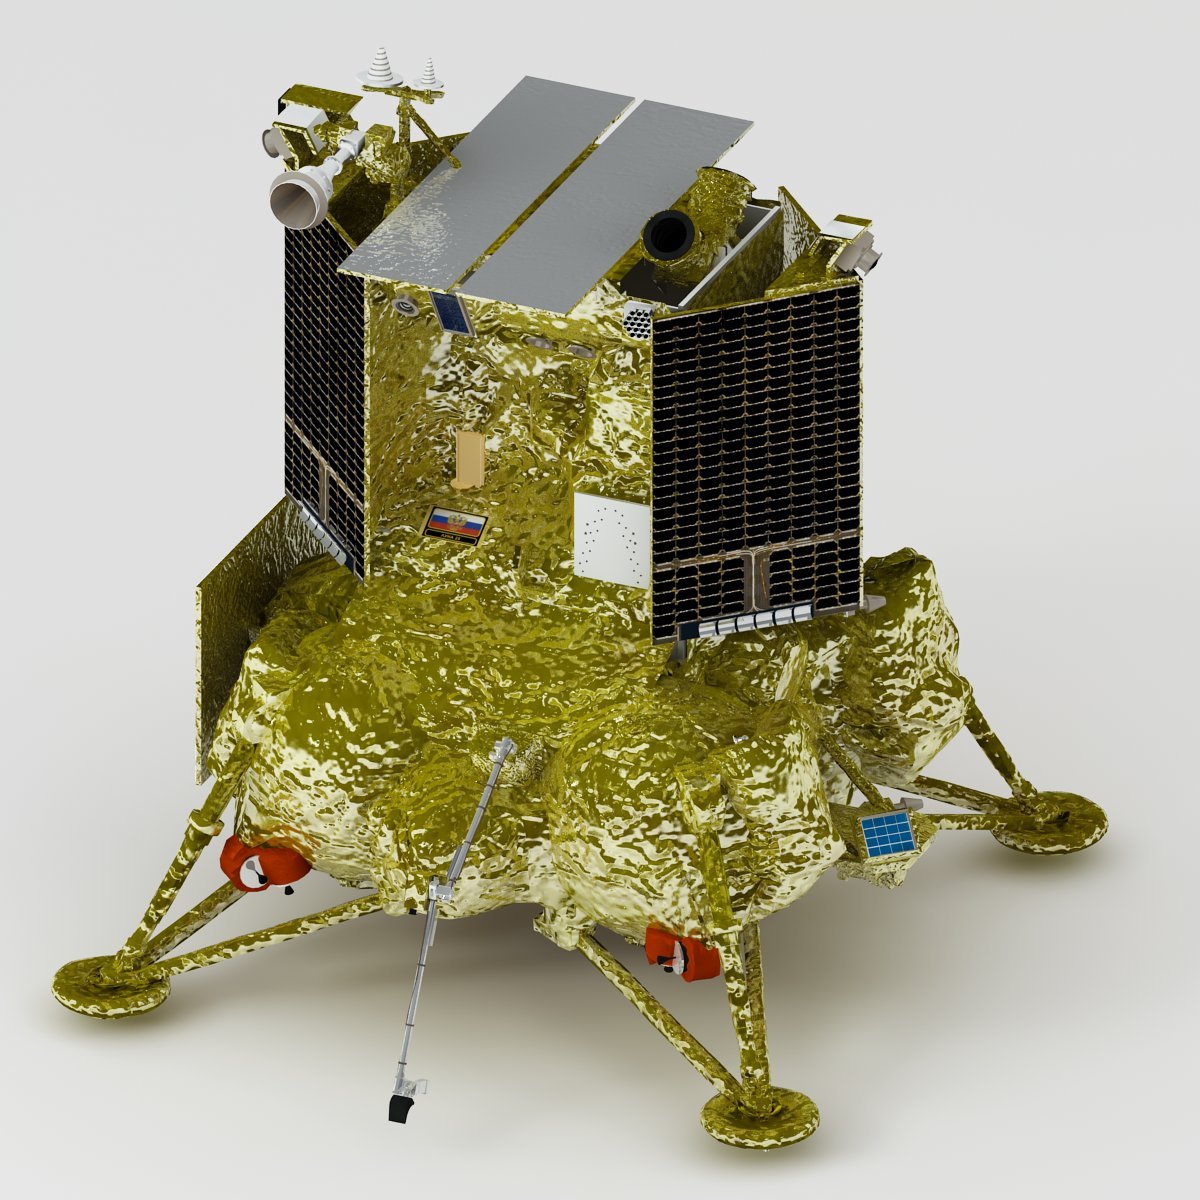 Luna 25 Luna-Glob lander 3D Model in Real Spacecraft 3DExport